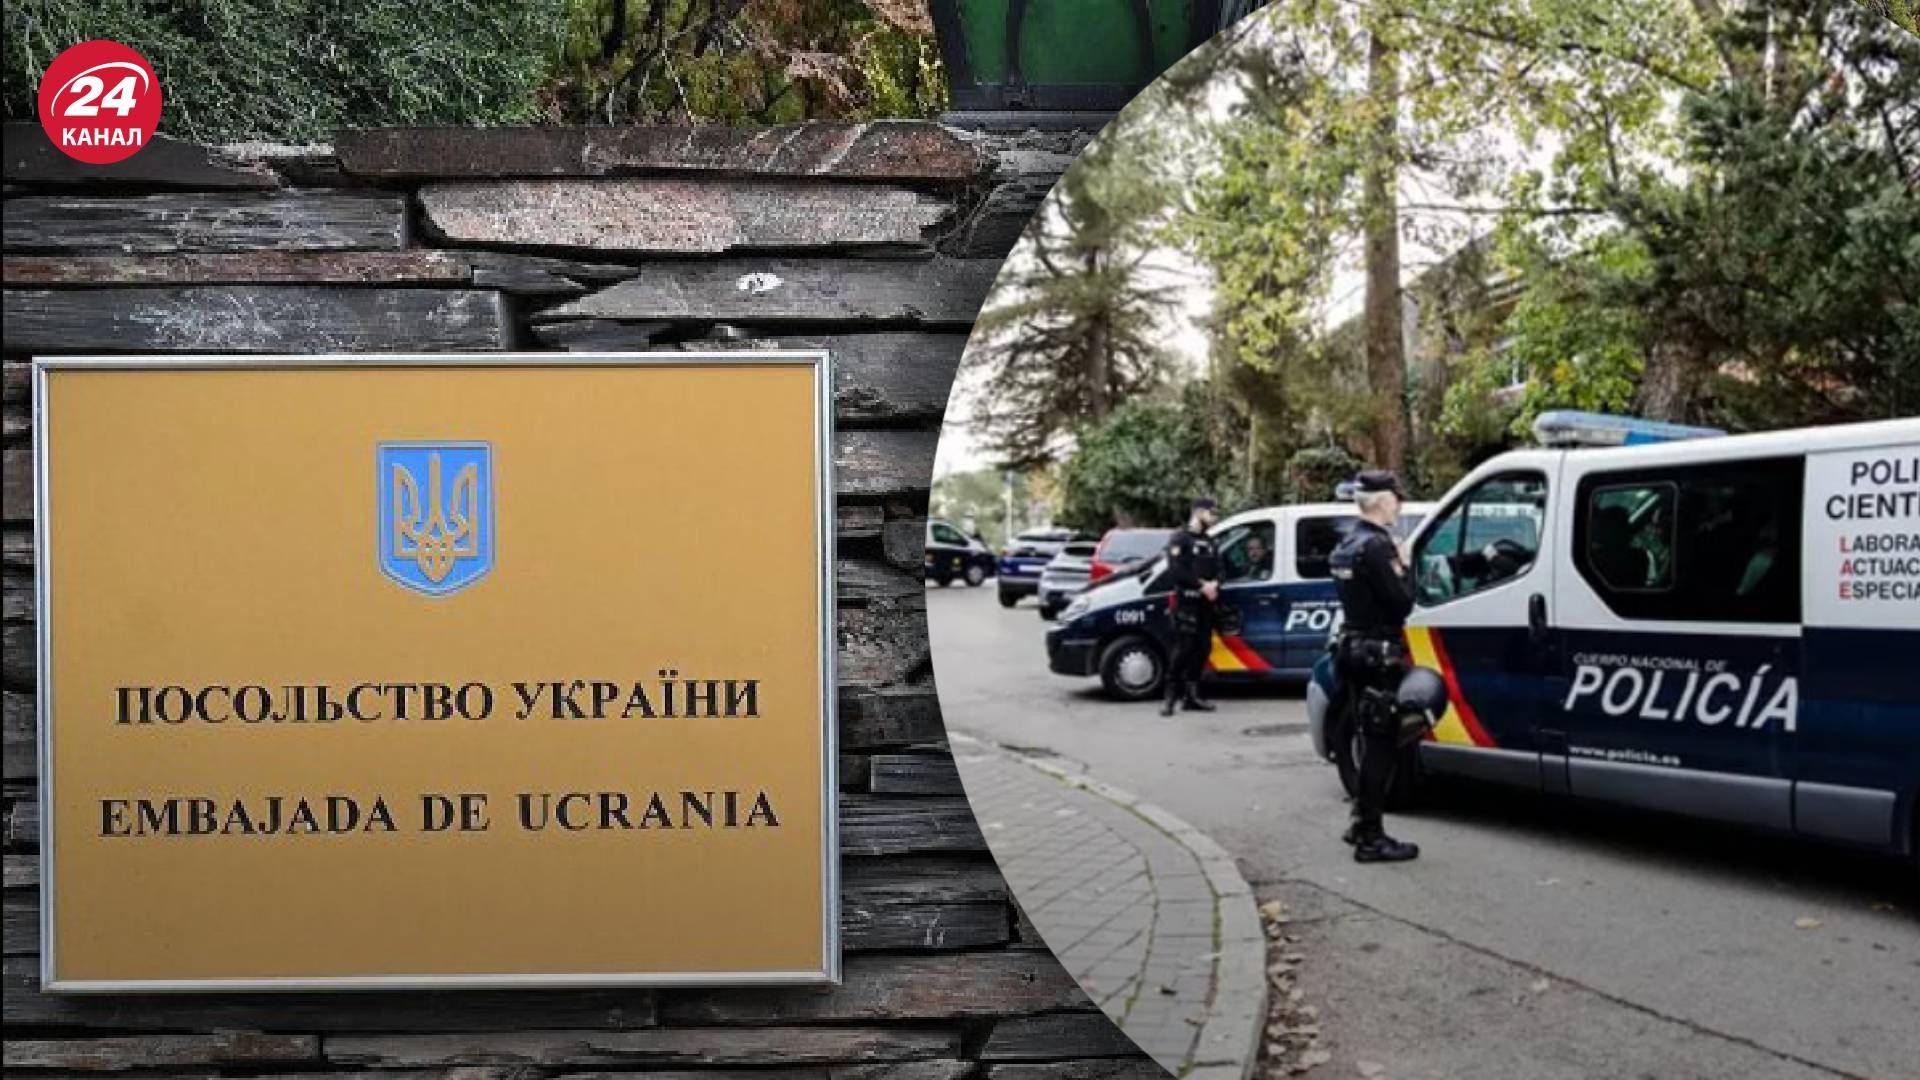 Теракт в посольстве Украины в Испании – новые детали о взрыве